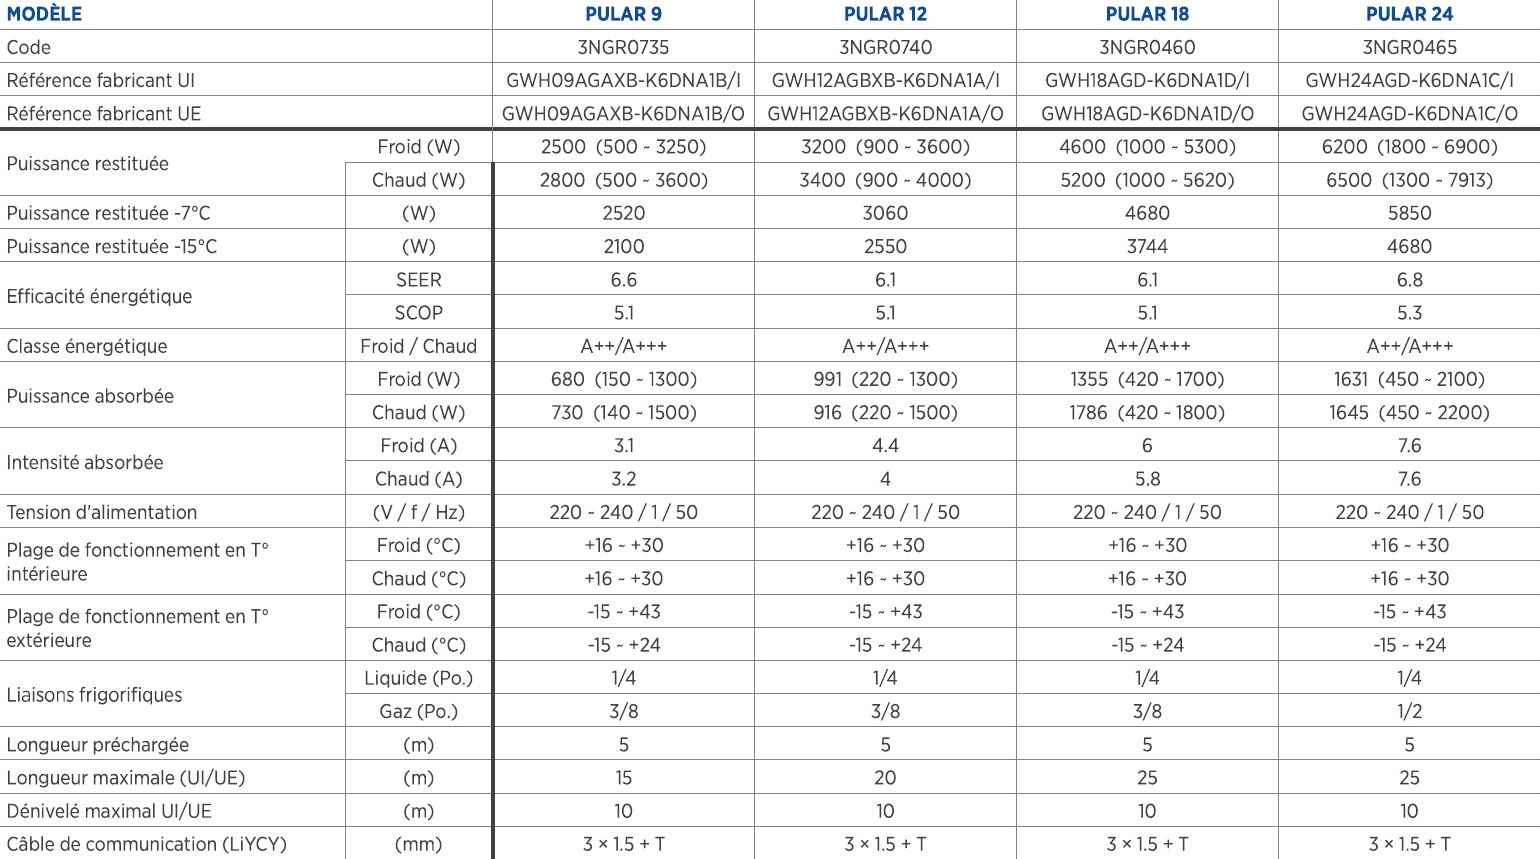 Tableau des caractéristiques techniques générales des monosplit Gree PULAR entre 2.5 kW et 6.2 kW